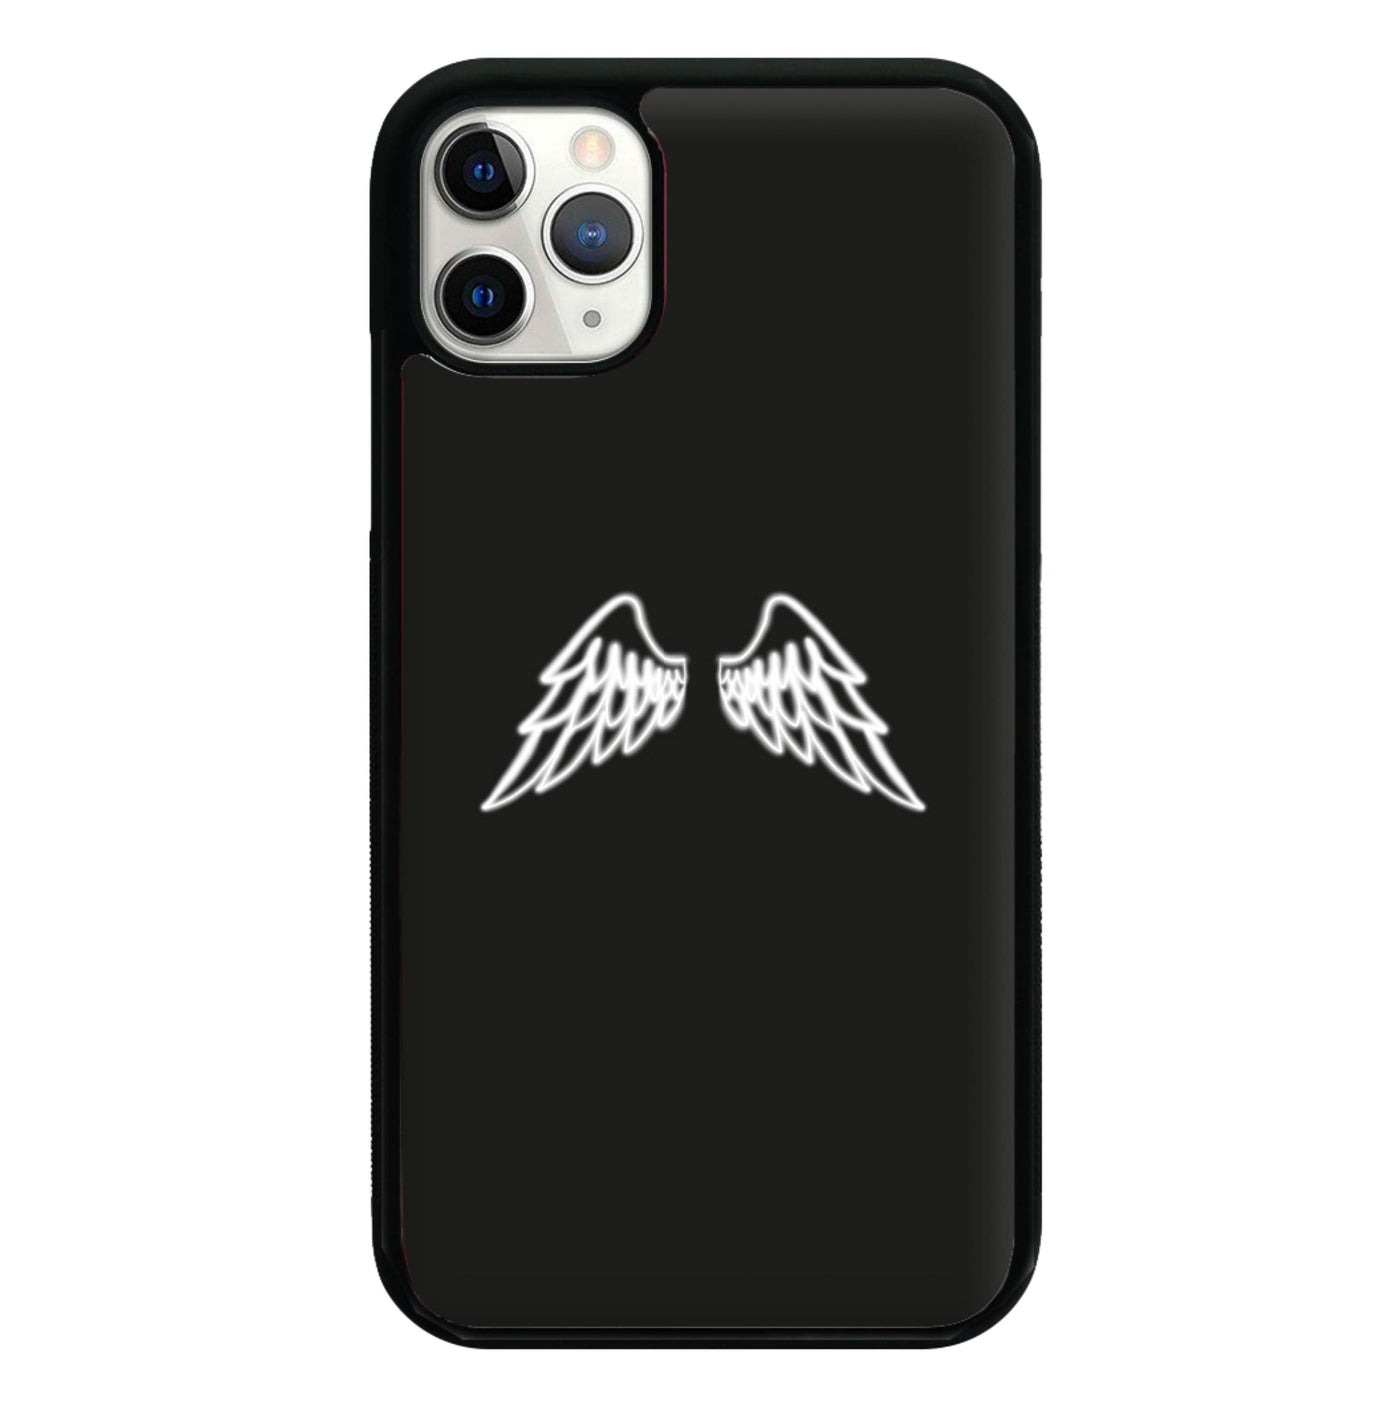 Angel Wings Phone Case